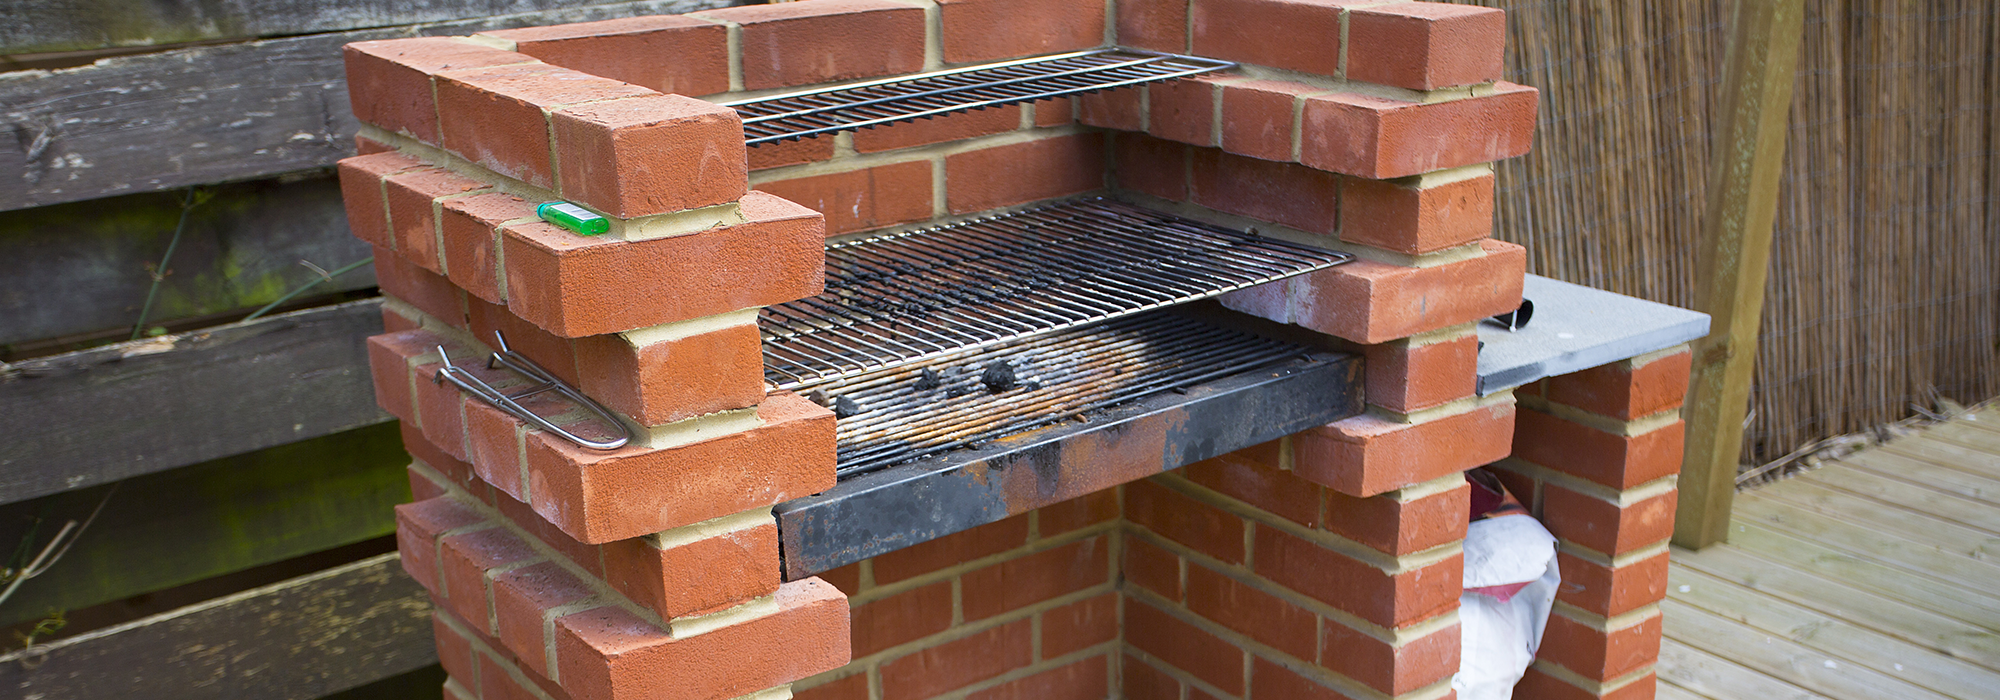 fabriquer barbecue en briques